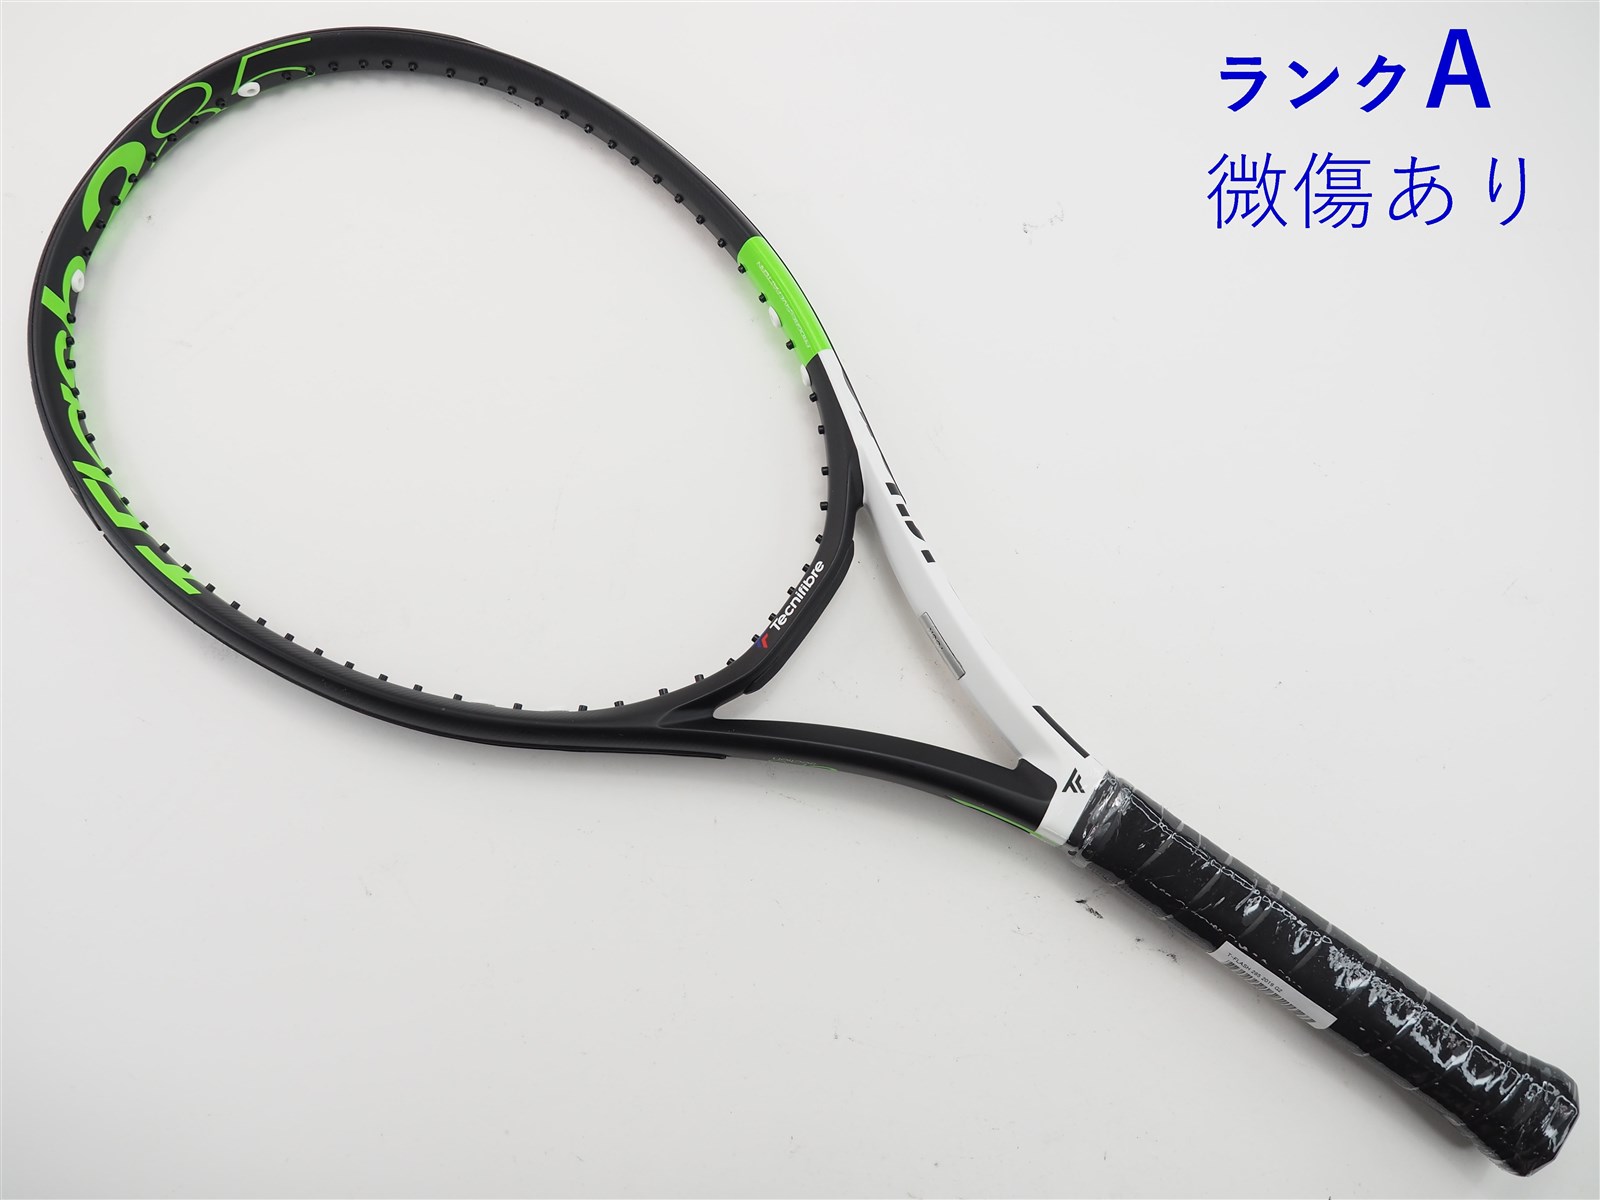 テニスラケット テクニファイバー ティーフラッシュ 285 2019年モデル